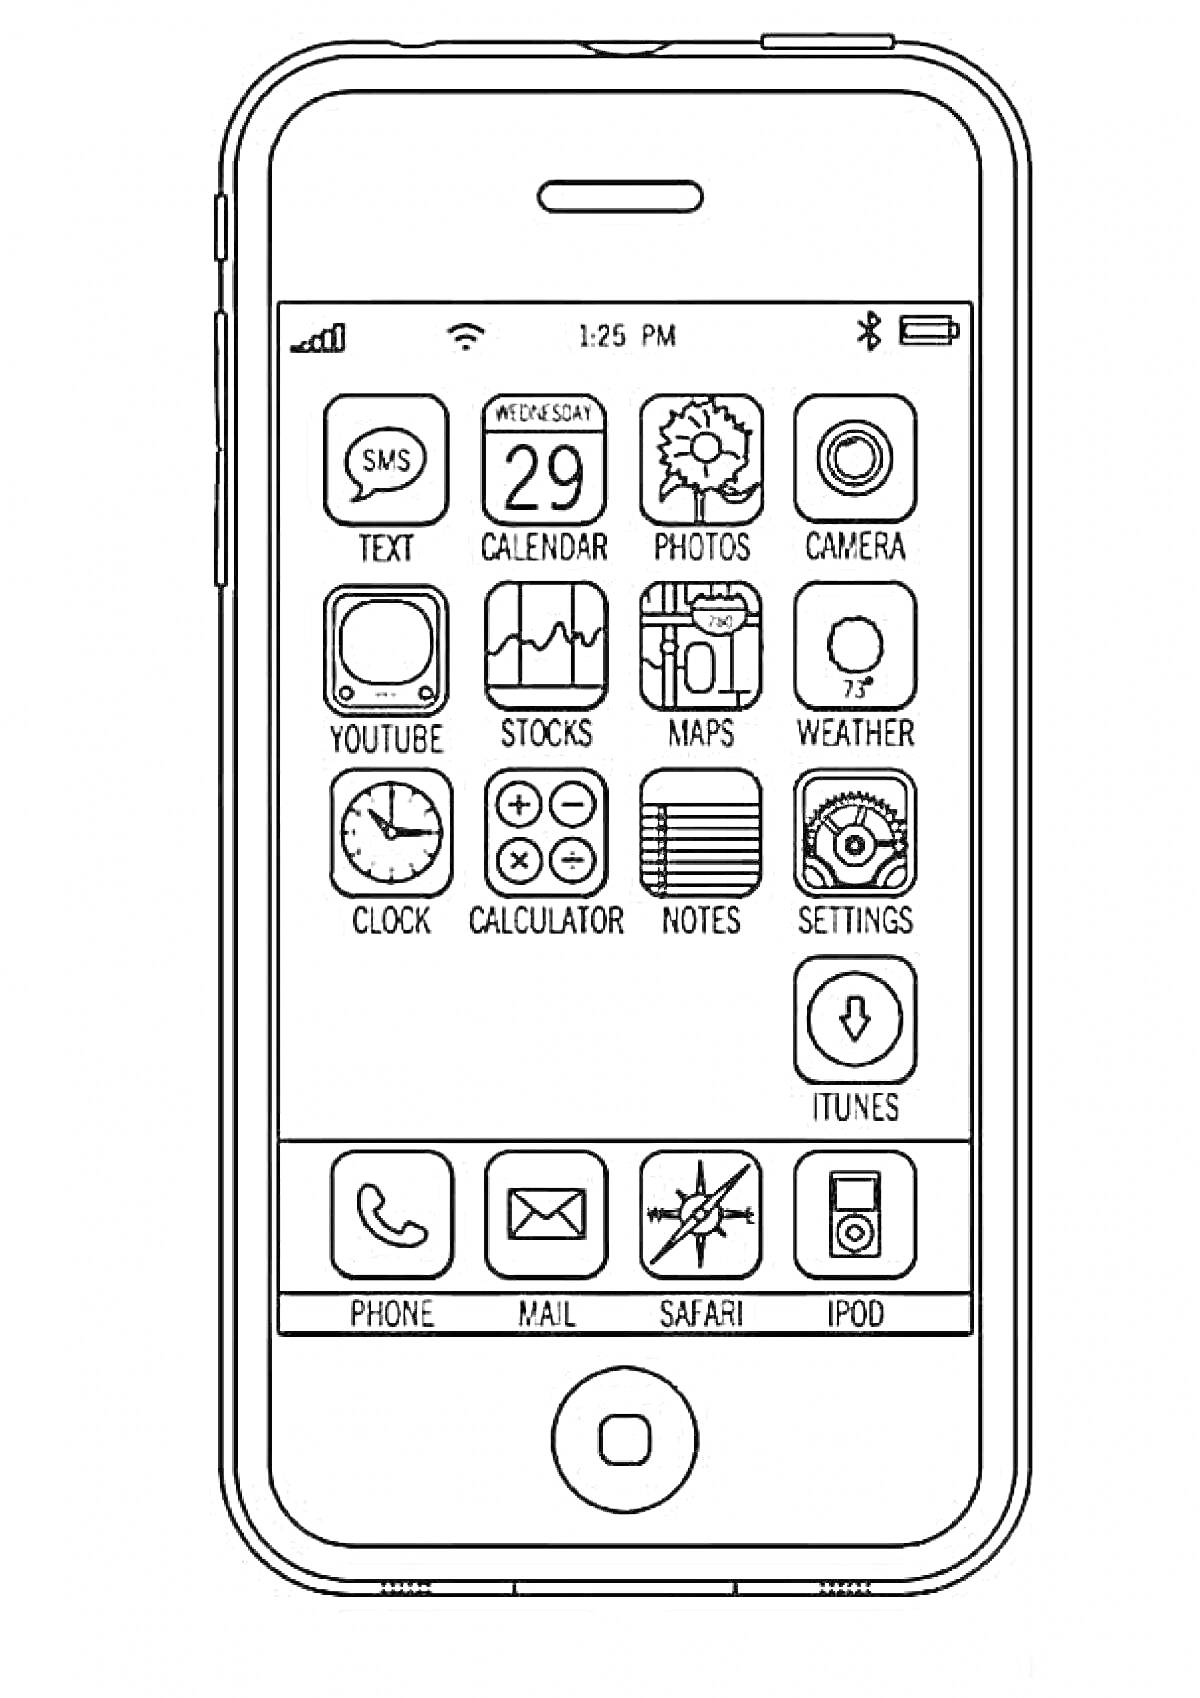 Раскраска Айфон с иконками приложений — SMS, календарь, фотографии, камера, YouTube, акции, карты, погода, часы, калькулятор, заметки, настройки, iTunes, телефон, почта, Safari, iPod